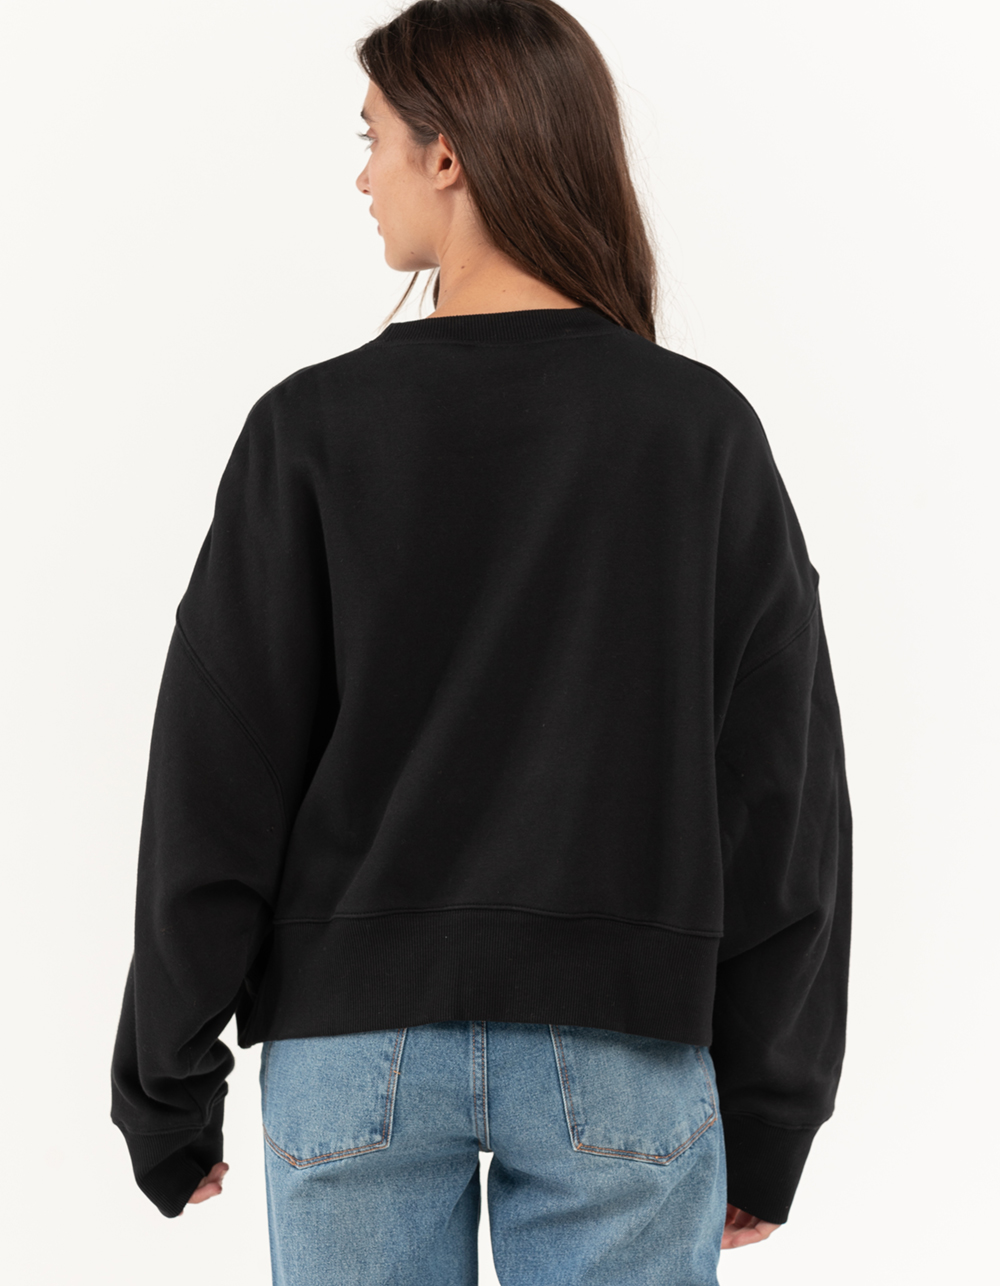 NIKE Sportswear Womens Oversized Crop Crewneck Sweatshirt - BLACK | Tillys